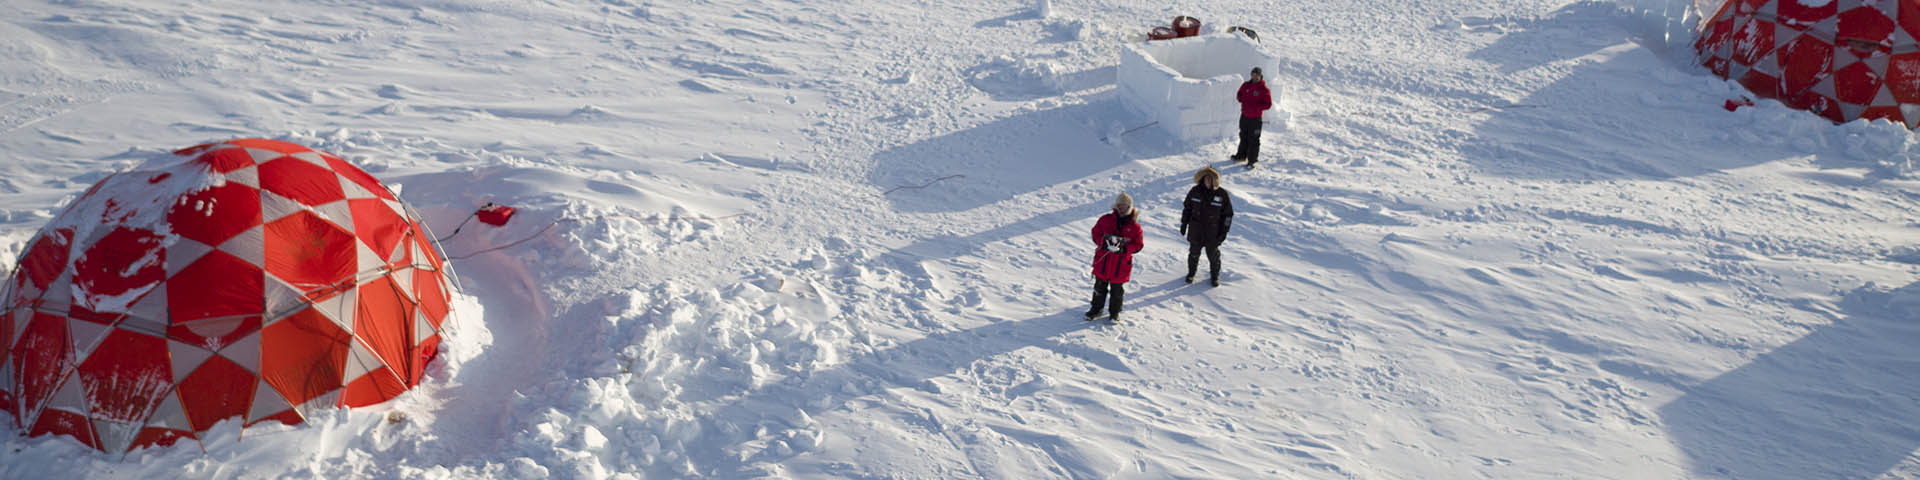 Une vue aérienne de trois personnes debout près de tentes dans la neige.